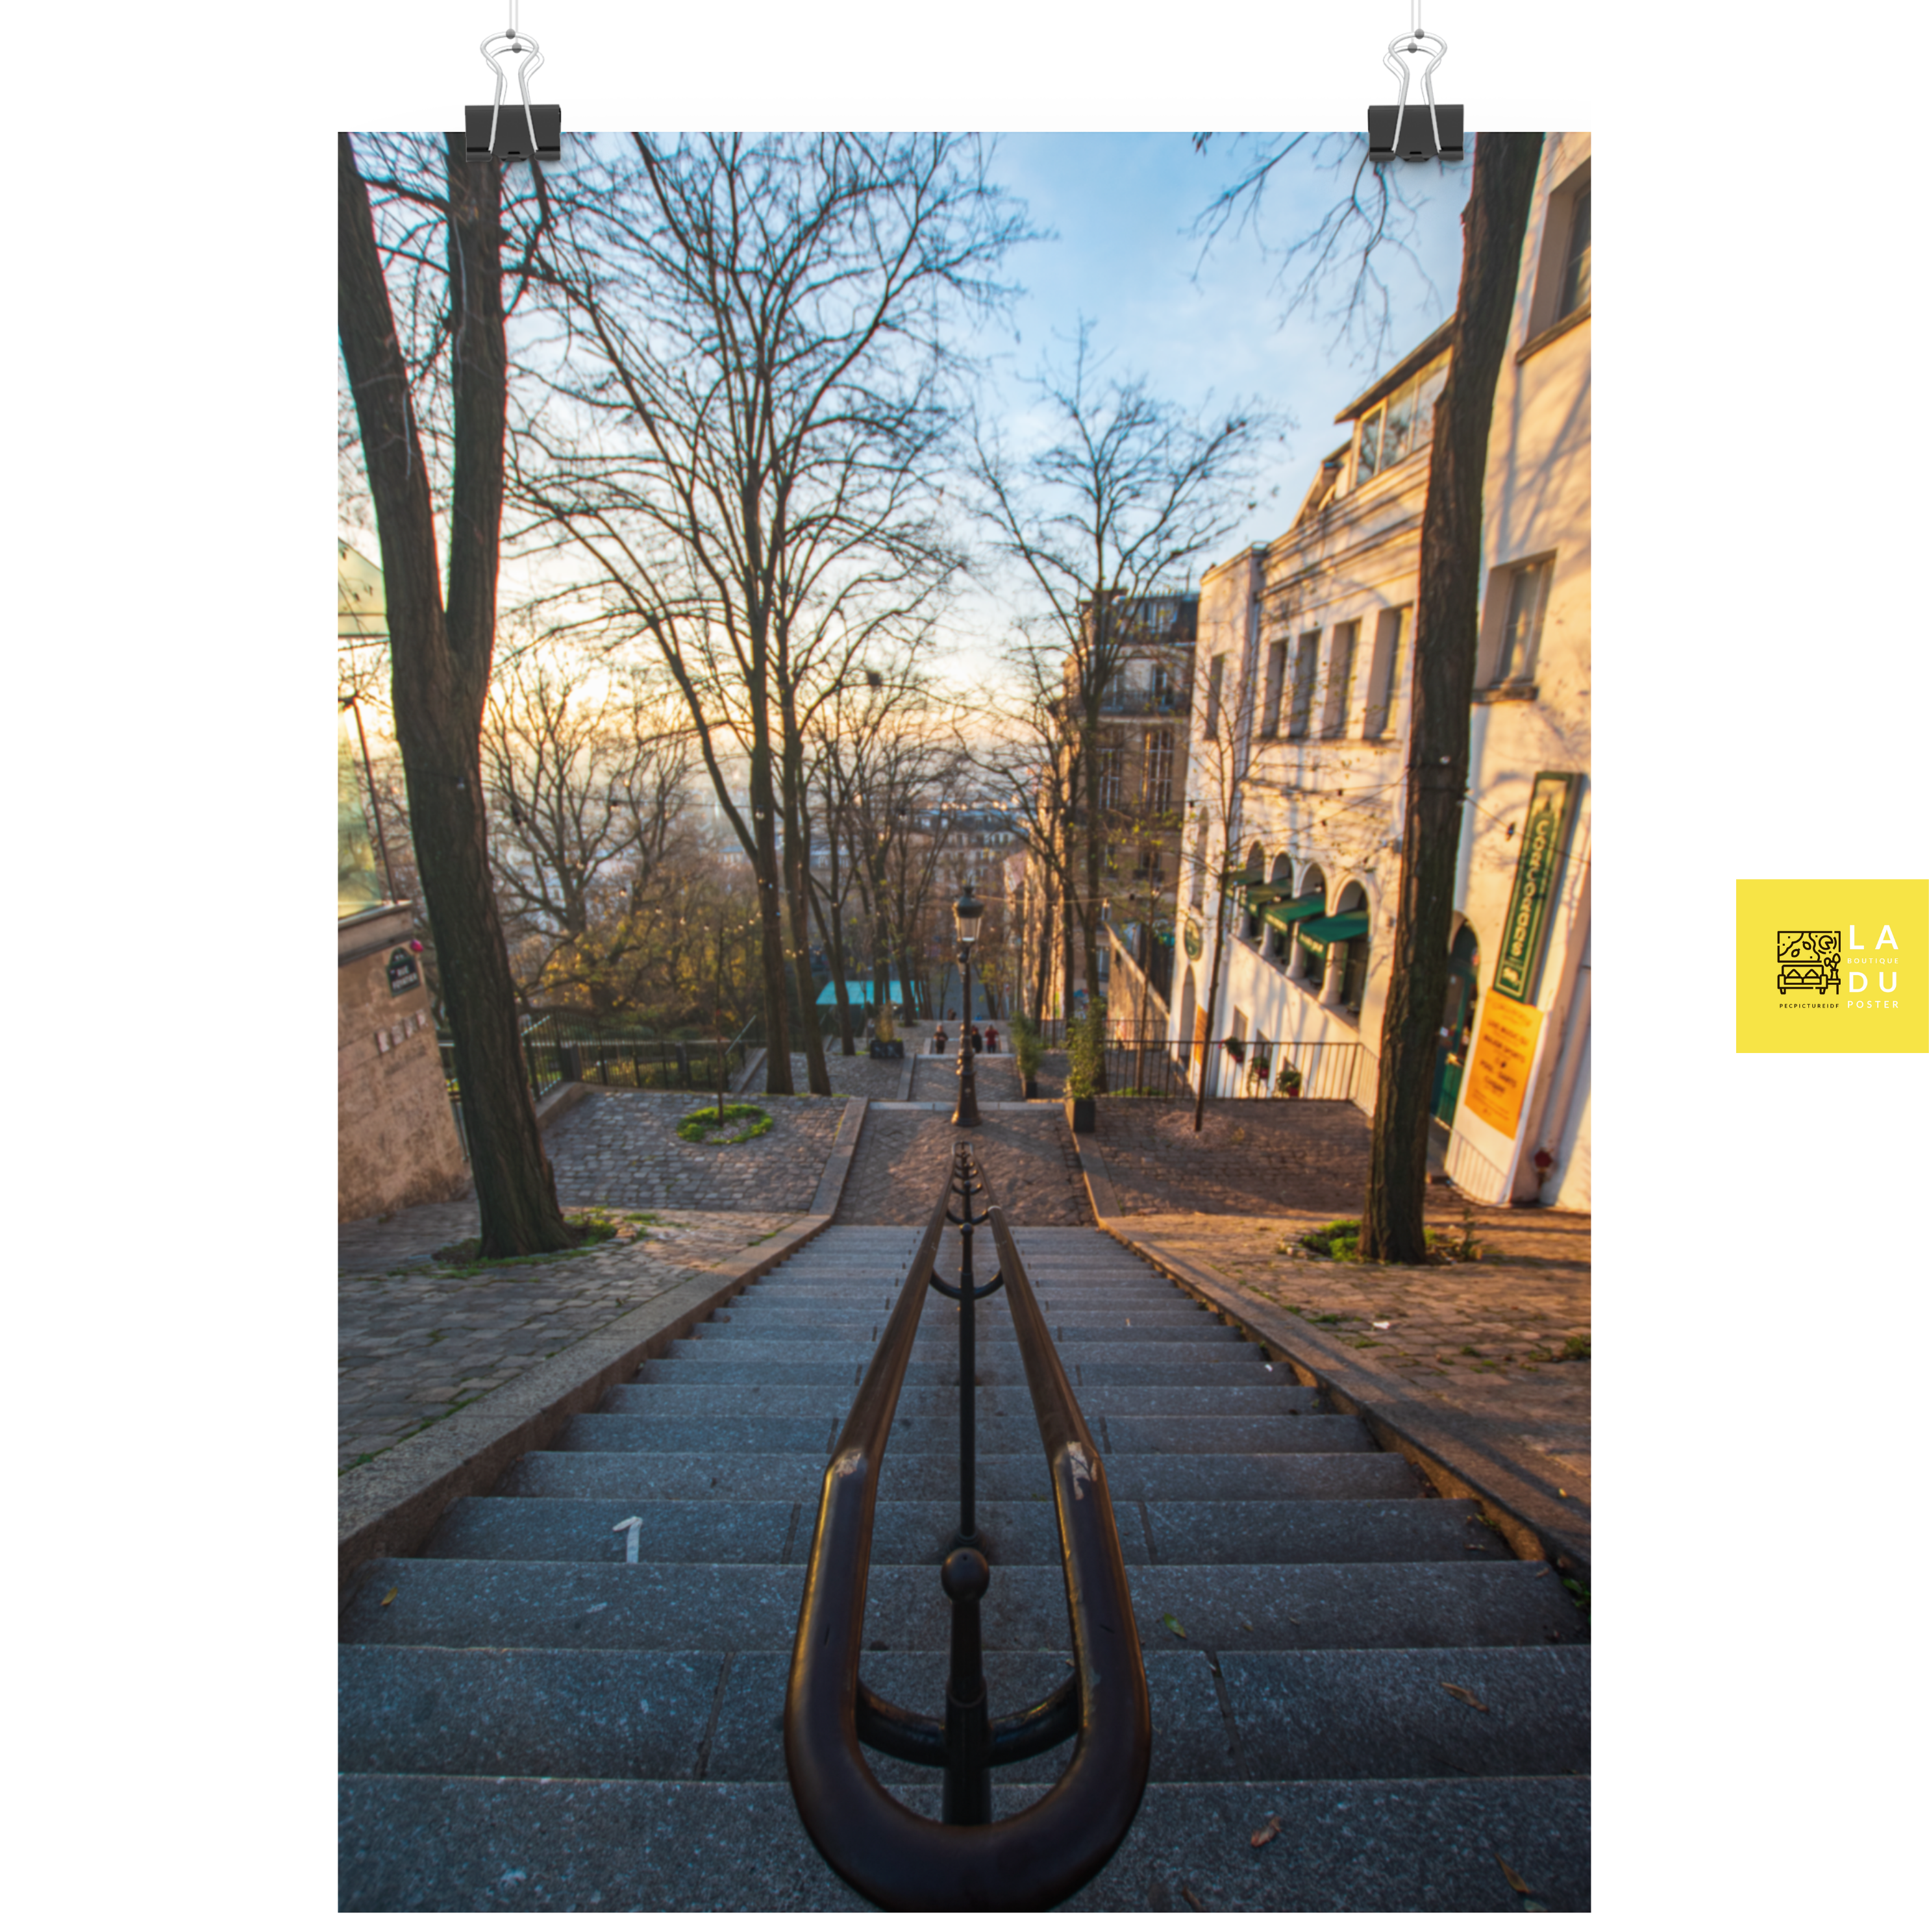 Montmartre escalier - Poster - La boutique du poster Français